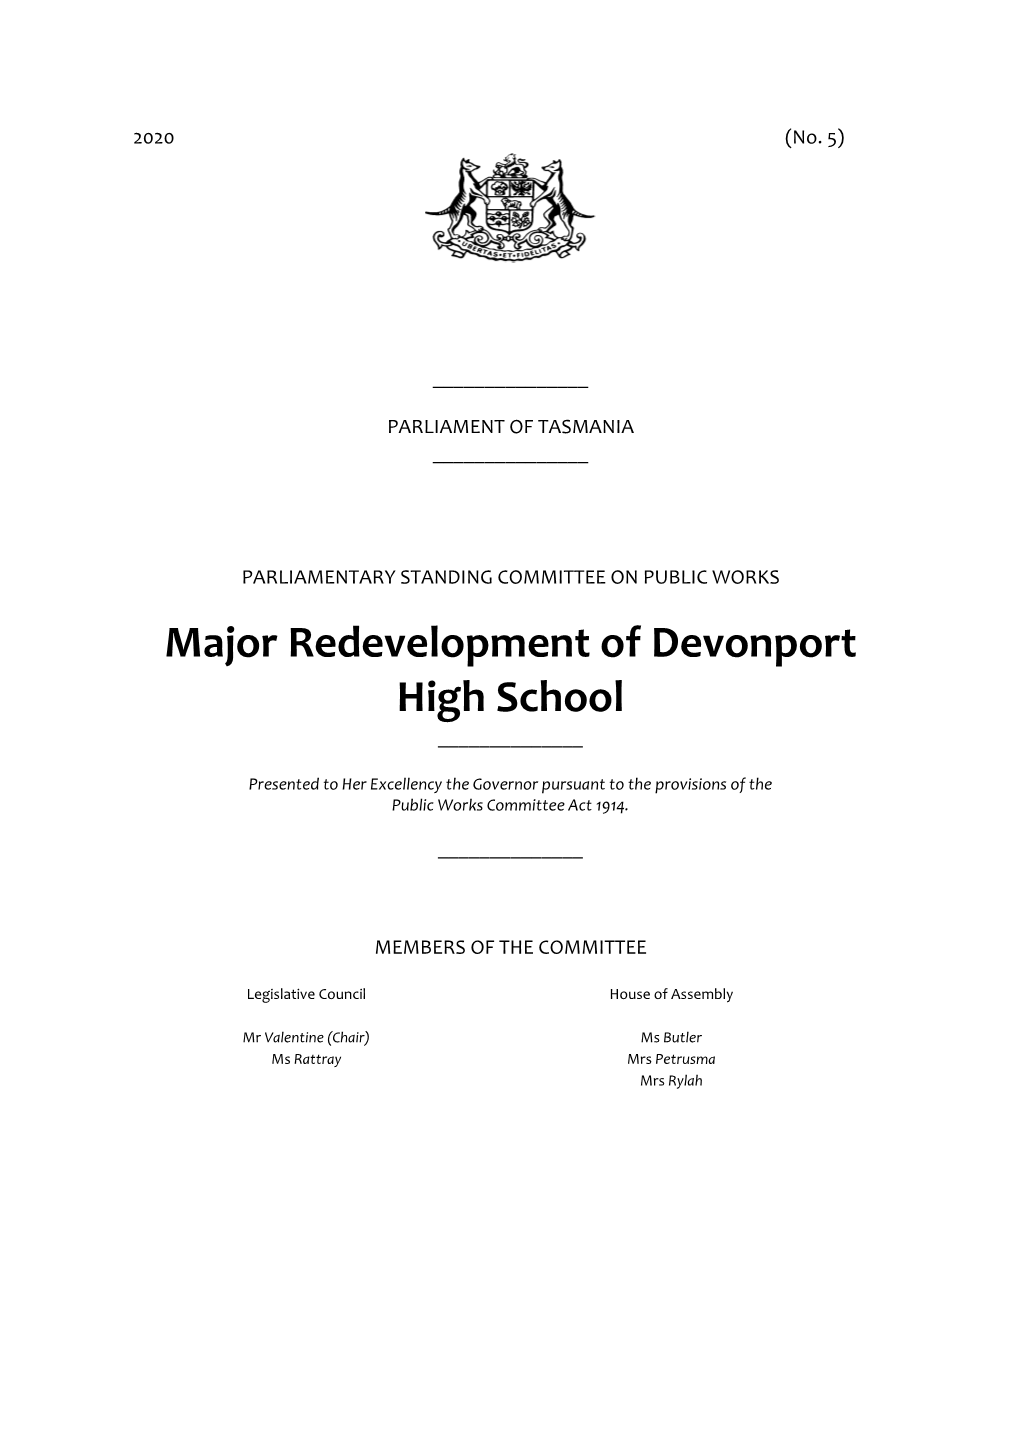 Major Redevelopment of Devonport High School